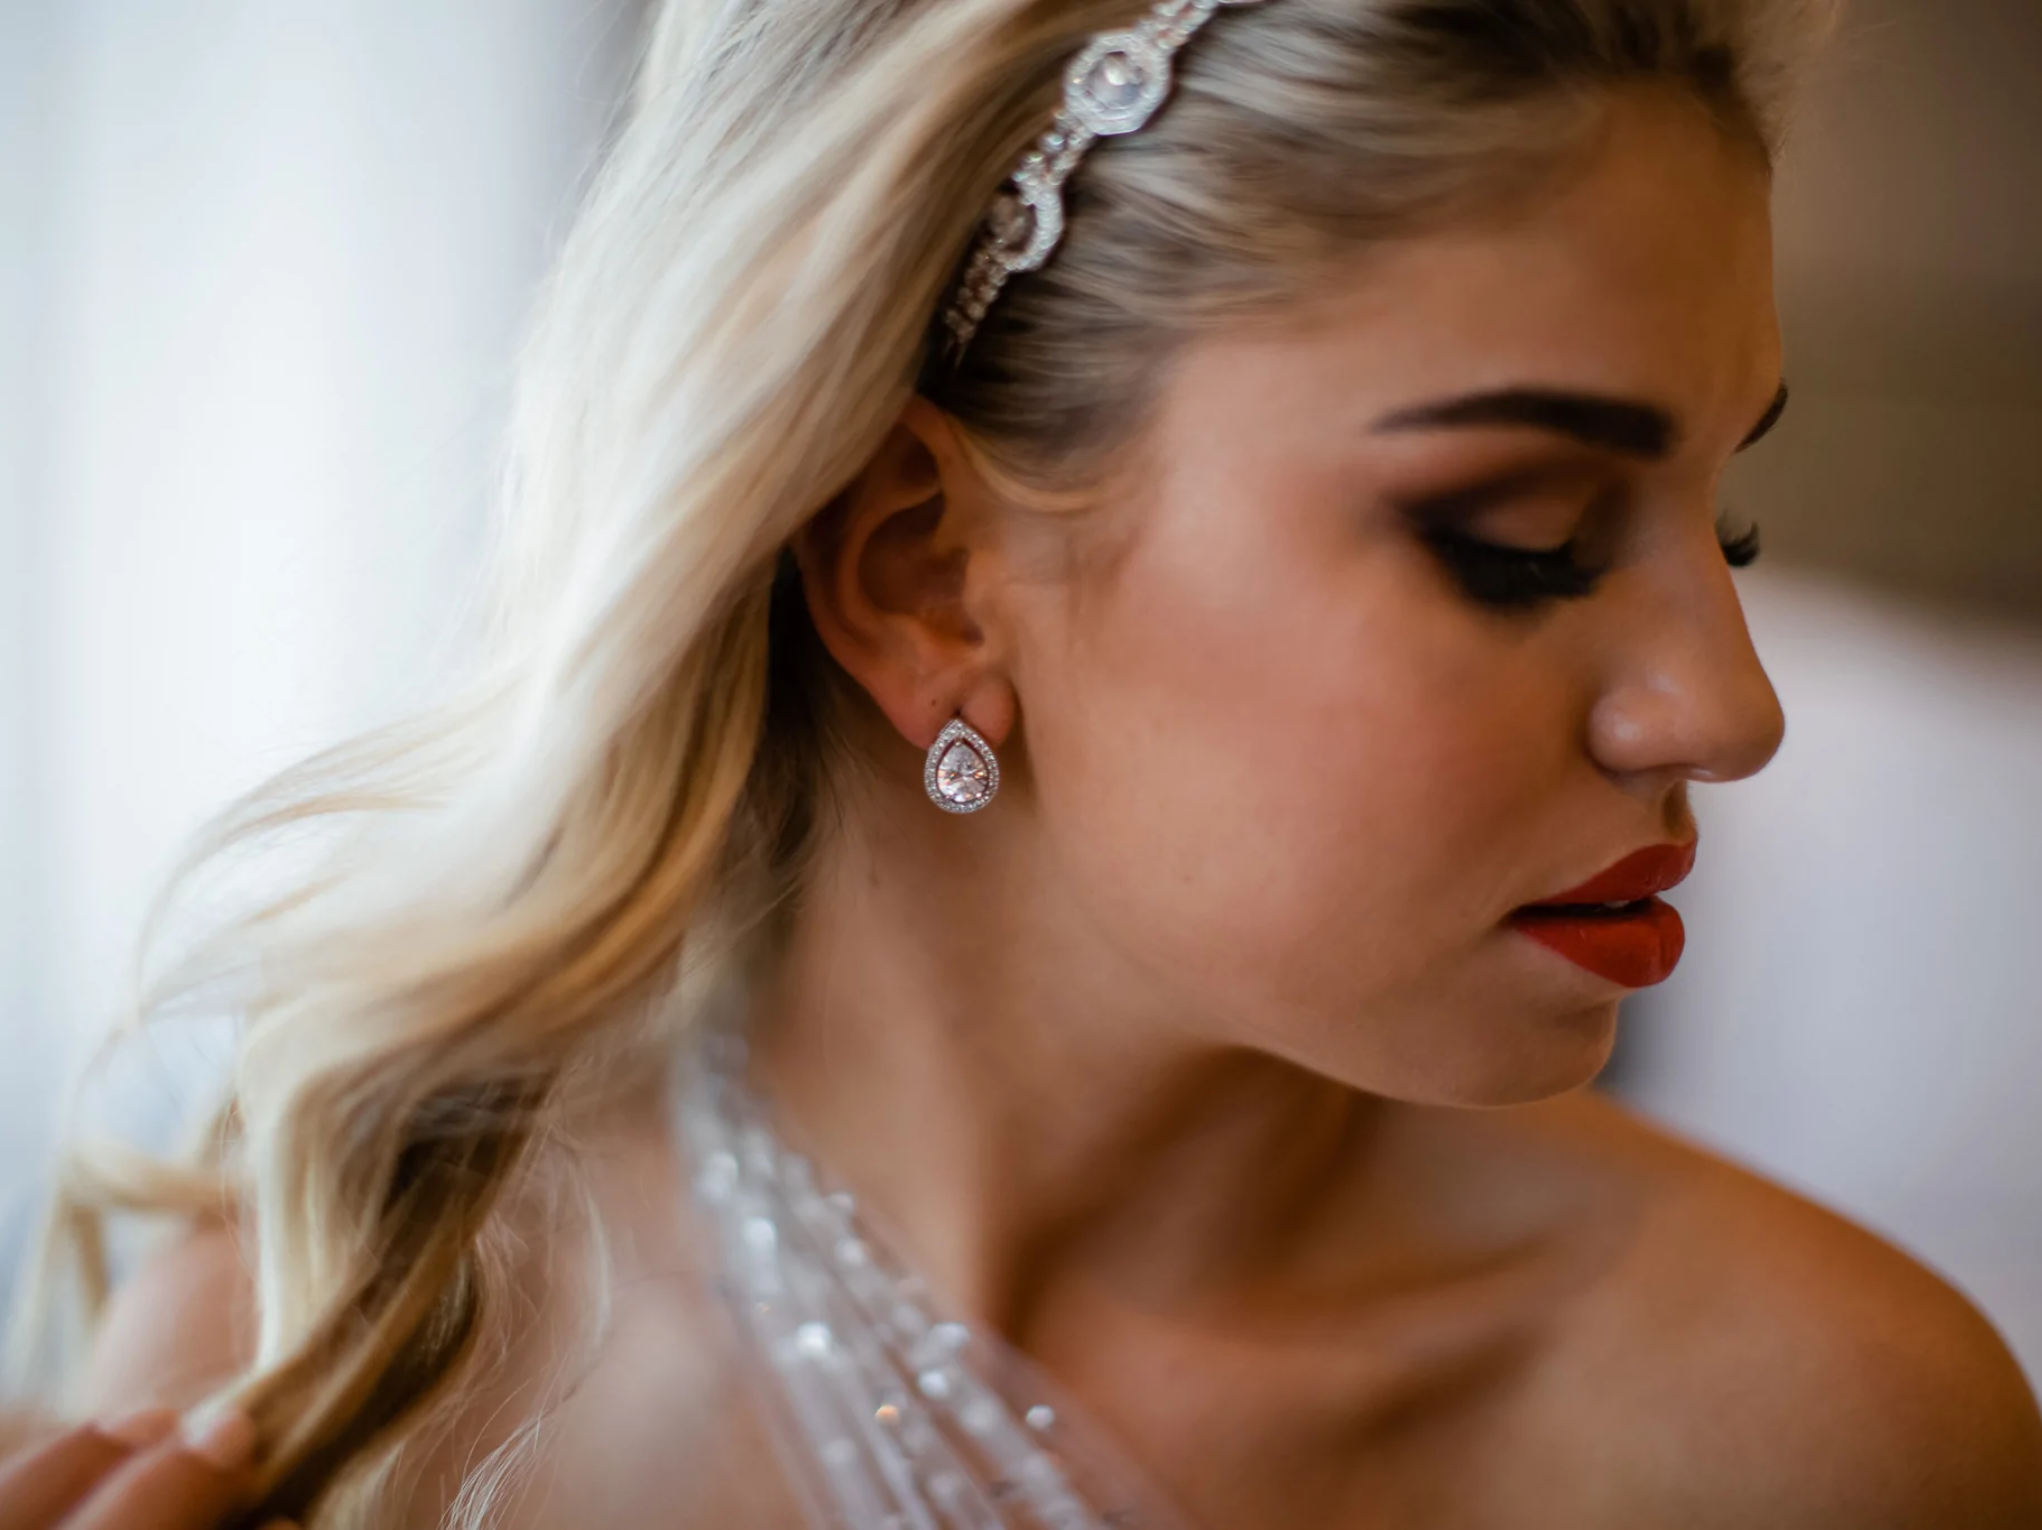 Juliette - Classic Teardrop Crystal Bridal Stud Earrings